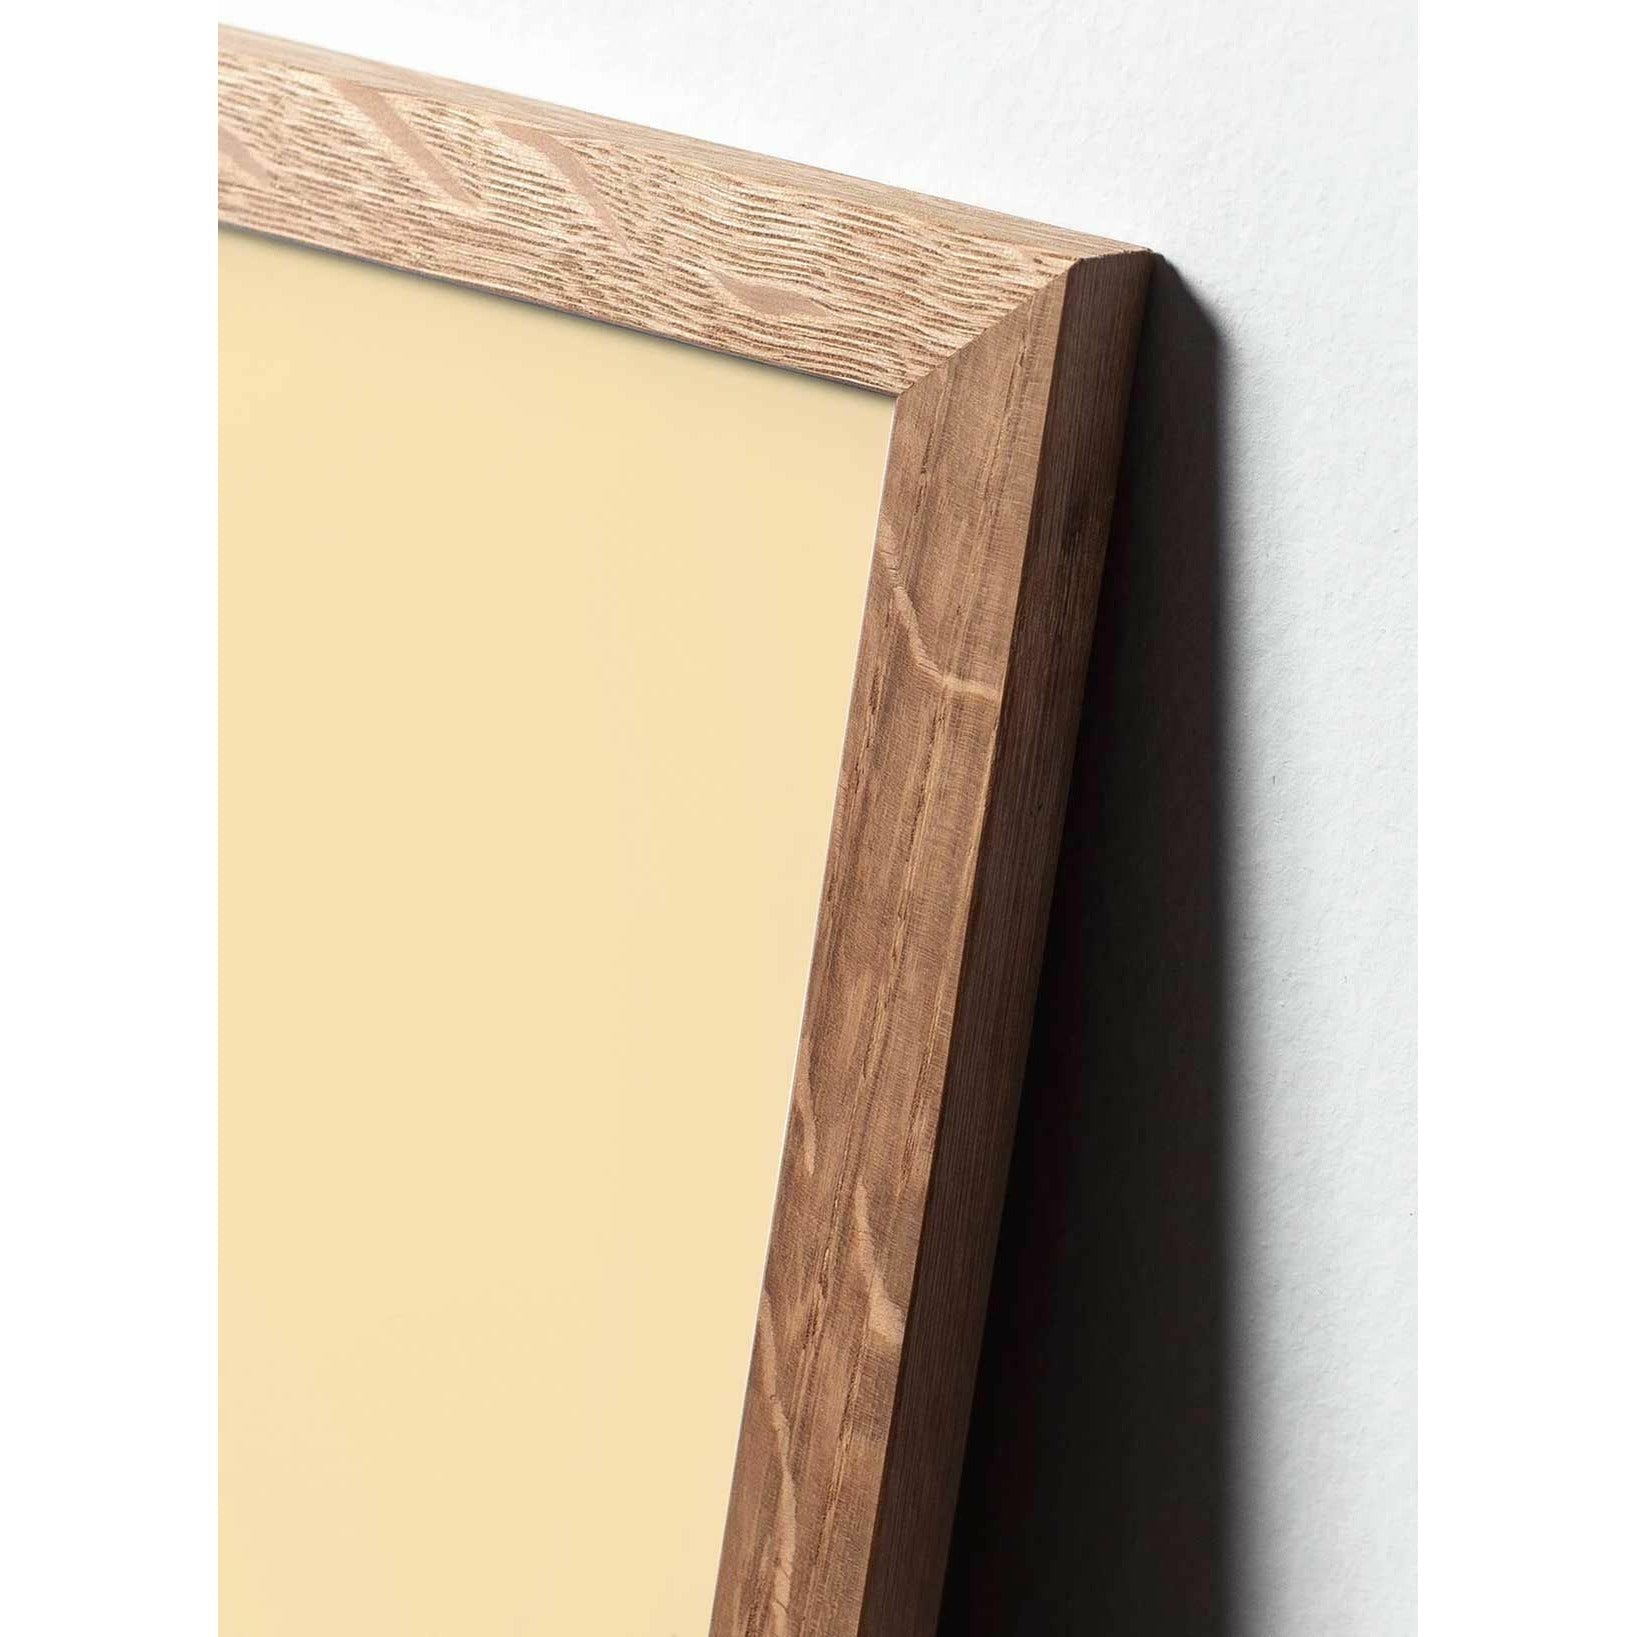 Póster clásico de cono de pino de creación, marco hecho de madera clara 30x40 cm, fondo rojo